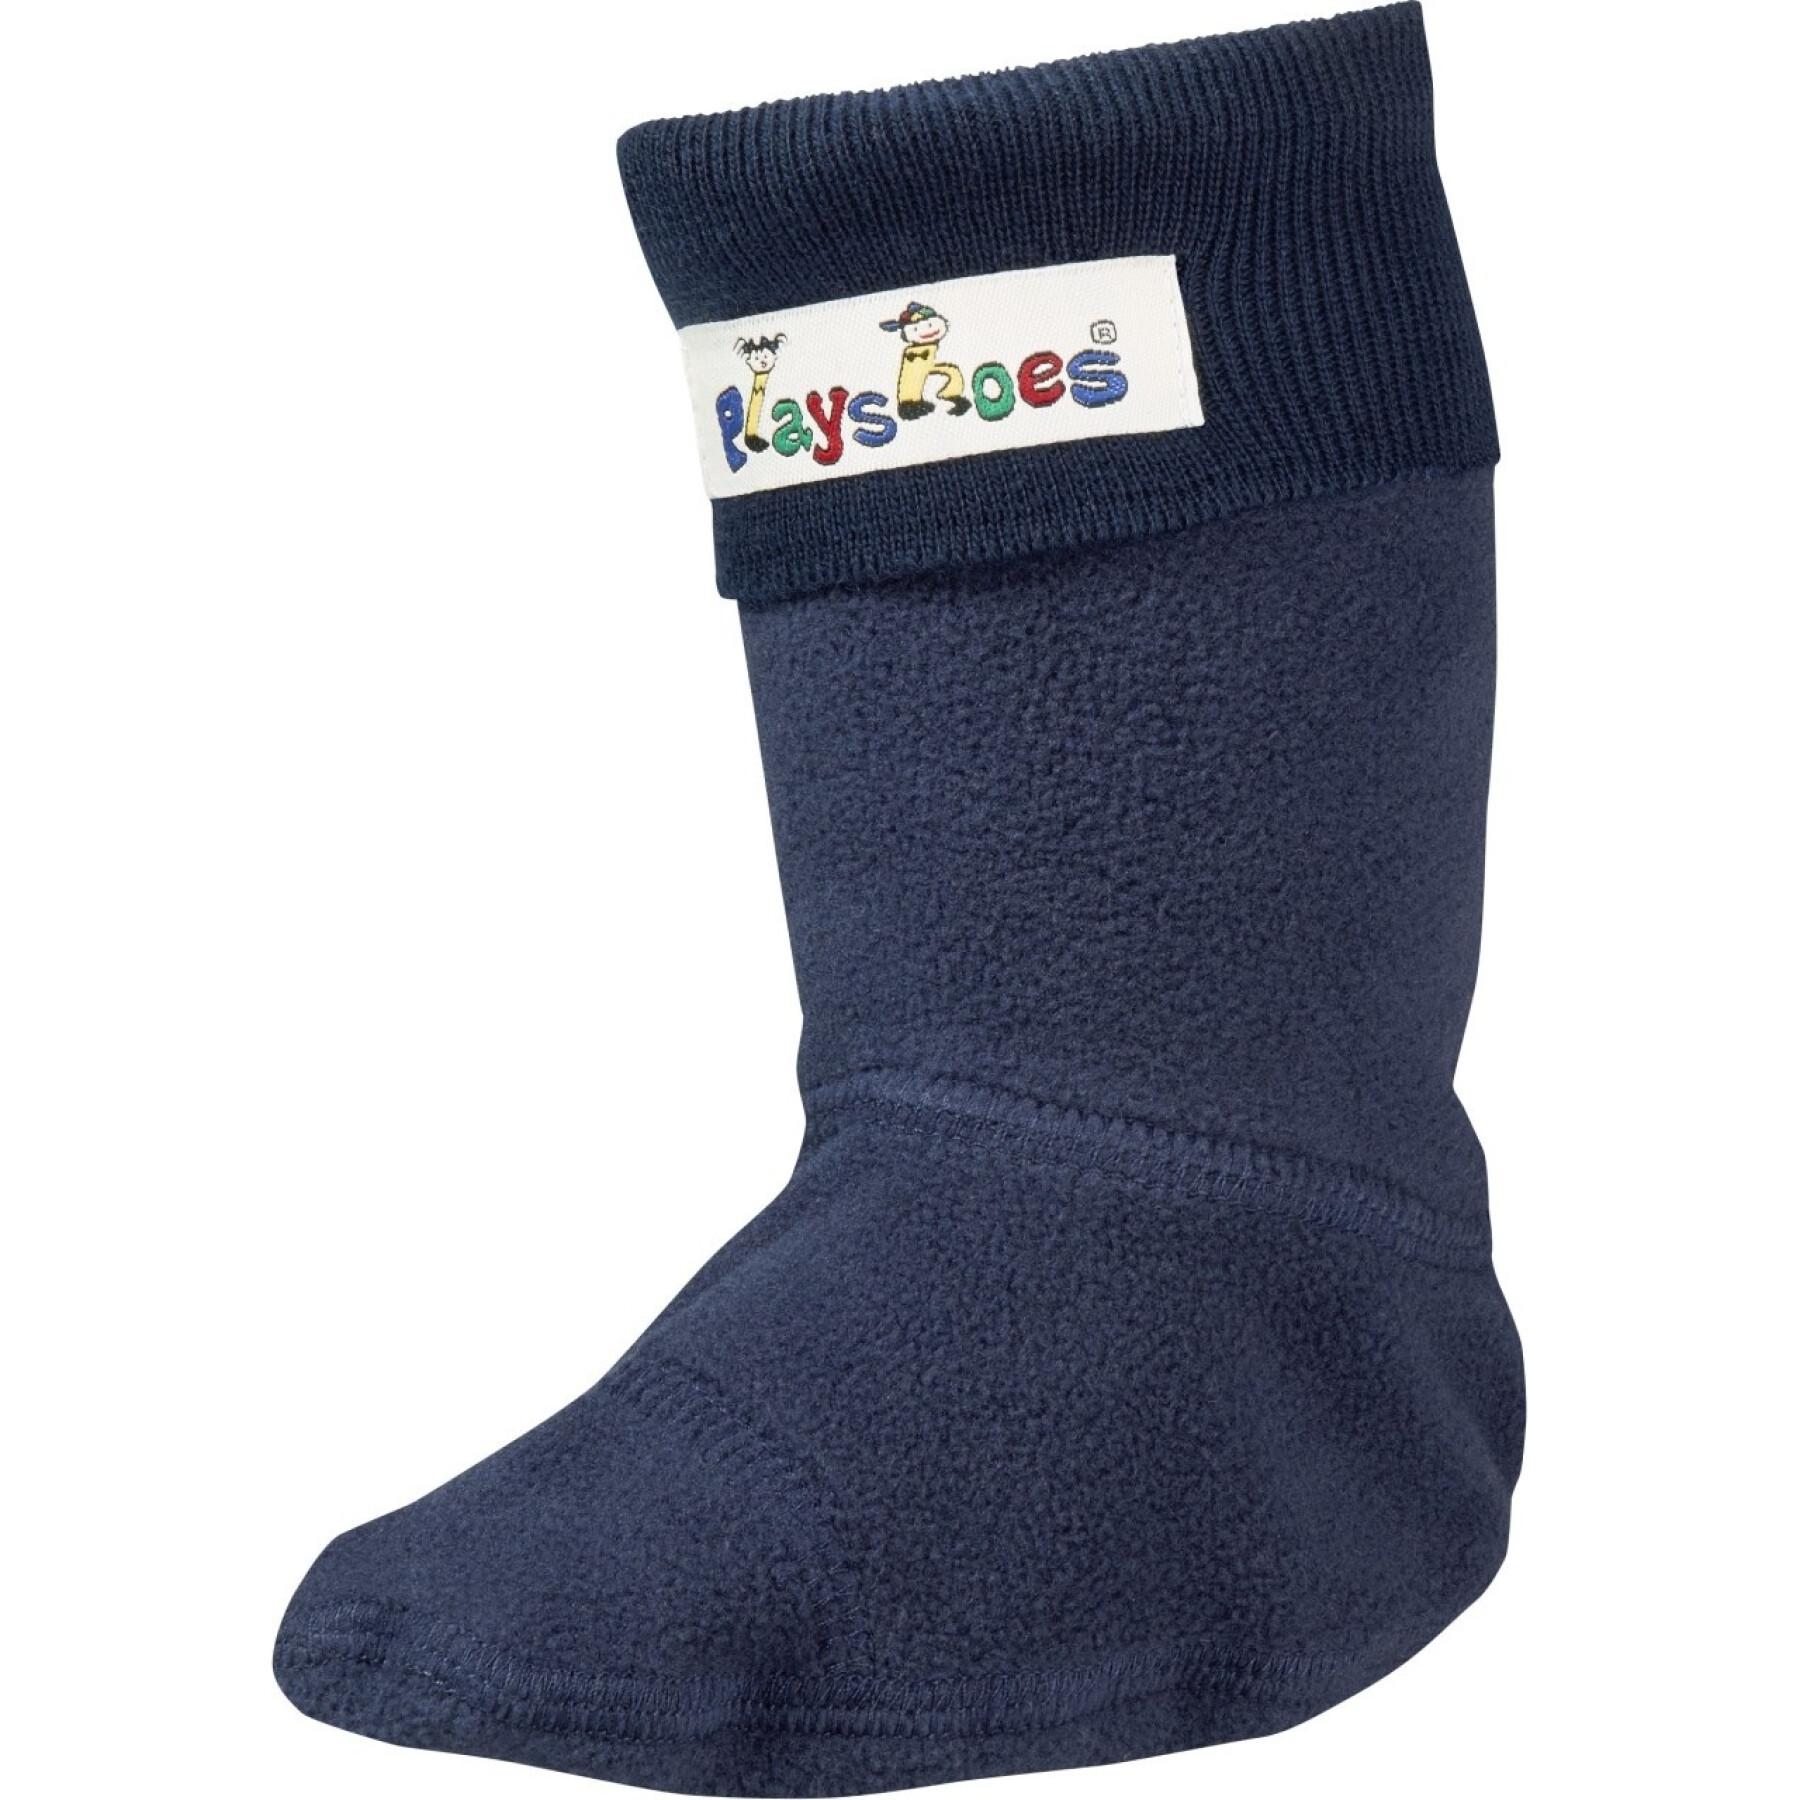 Children's fleece socks Playshoes